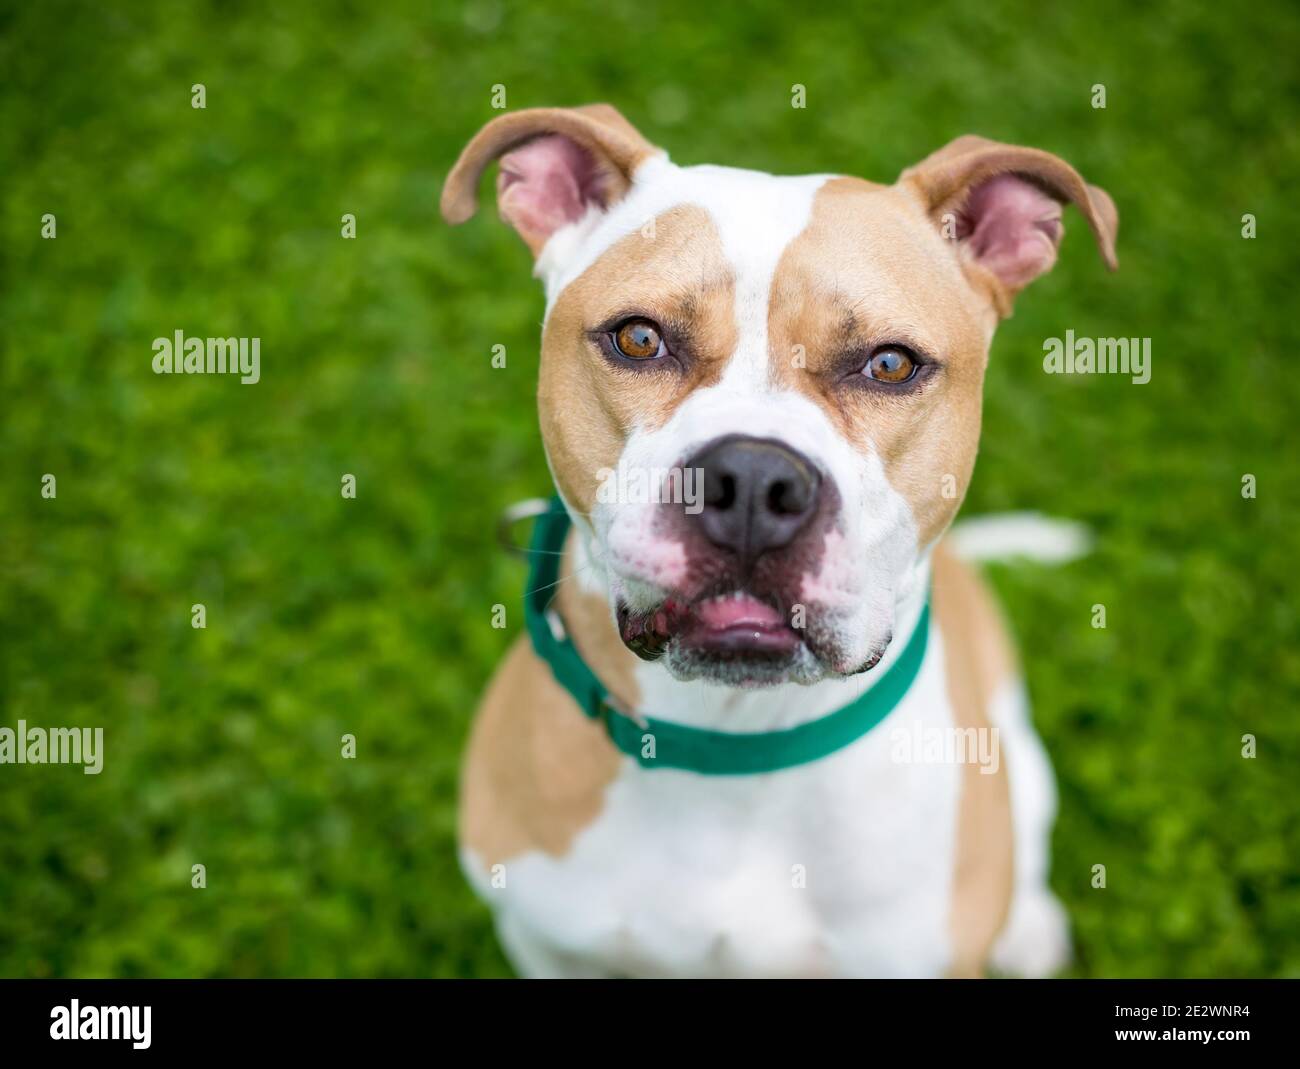 Un cane di razza mista Pit Bull Terrier con marcature bianche e fawn, indossando un collare verde e guardando la fotocamera Foto Stock